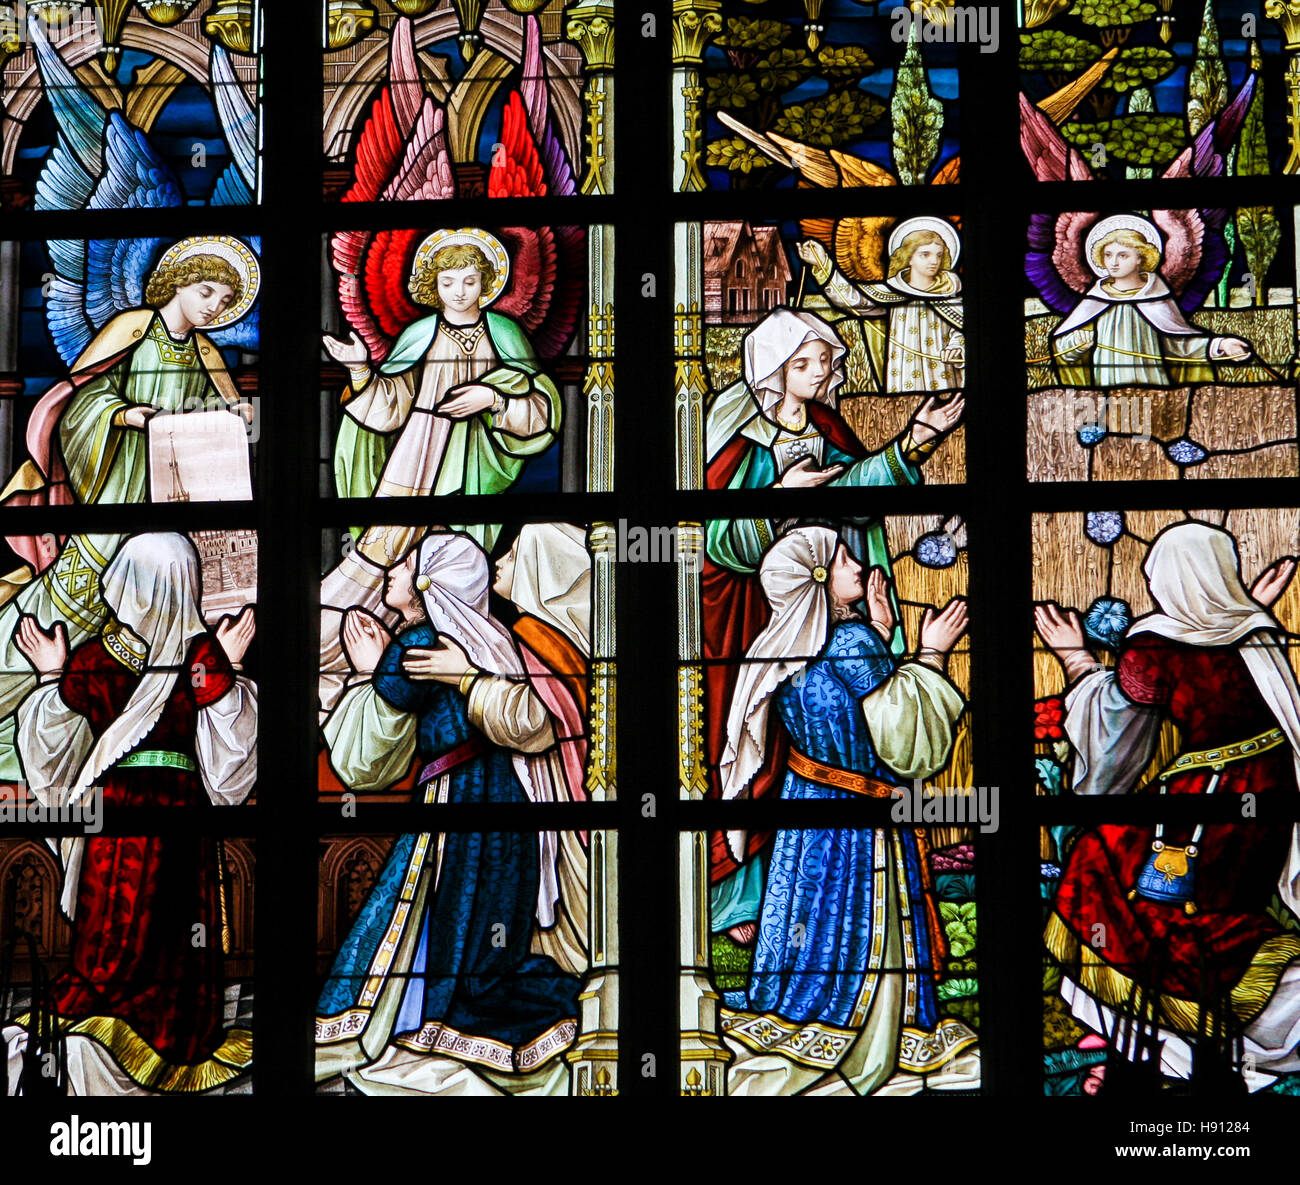 Vitrail représentant des anges et des femmes dans l'Église d'Alsemberg, Belgique. Banque D'Images